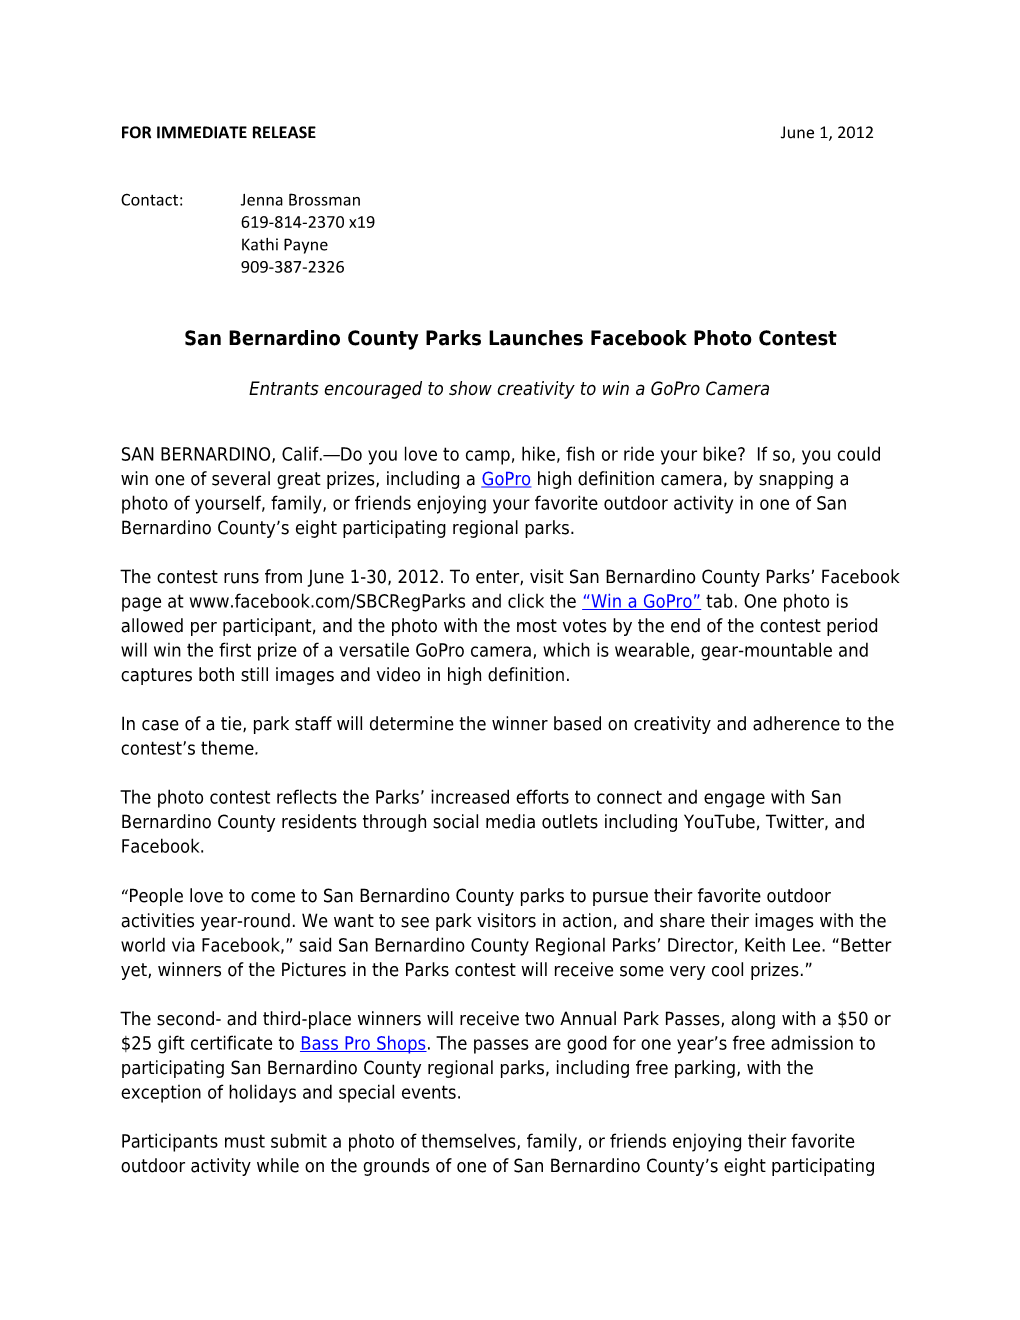 San Bernardino County Parks Launches Facebook Photo Contest